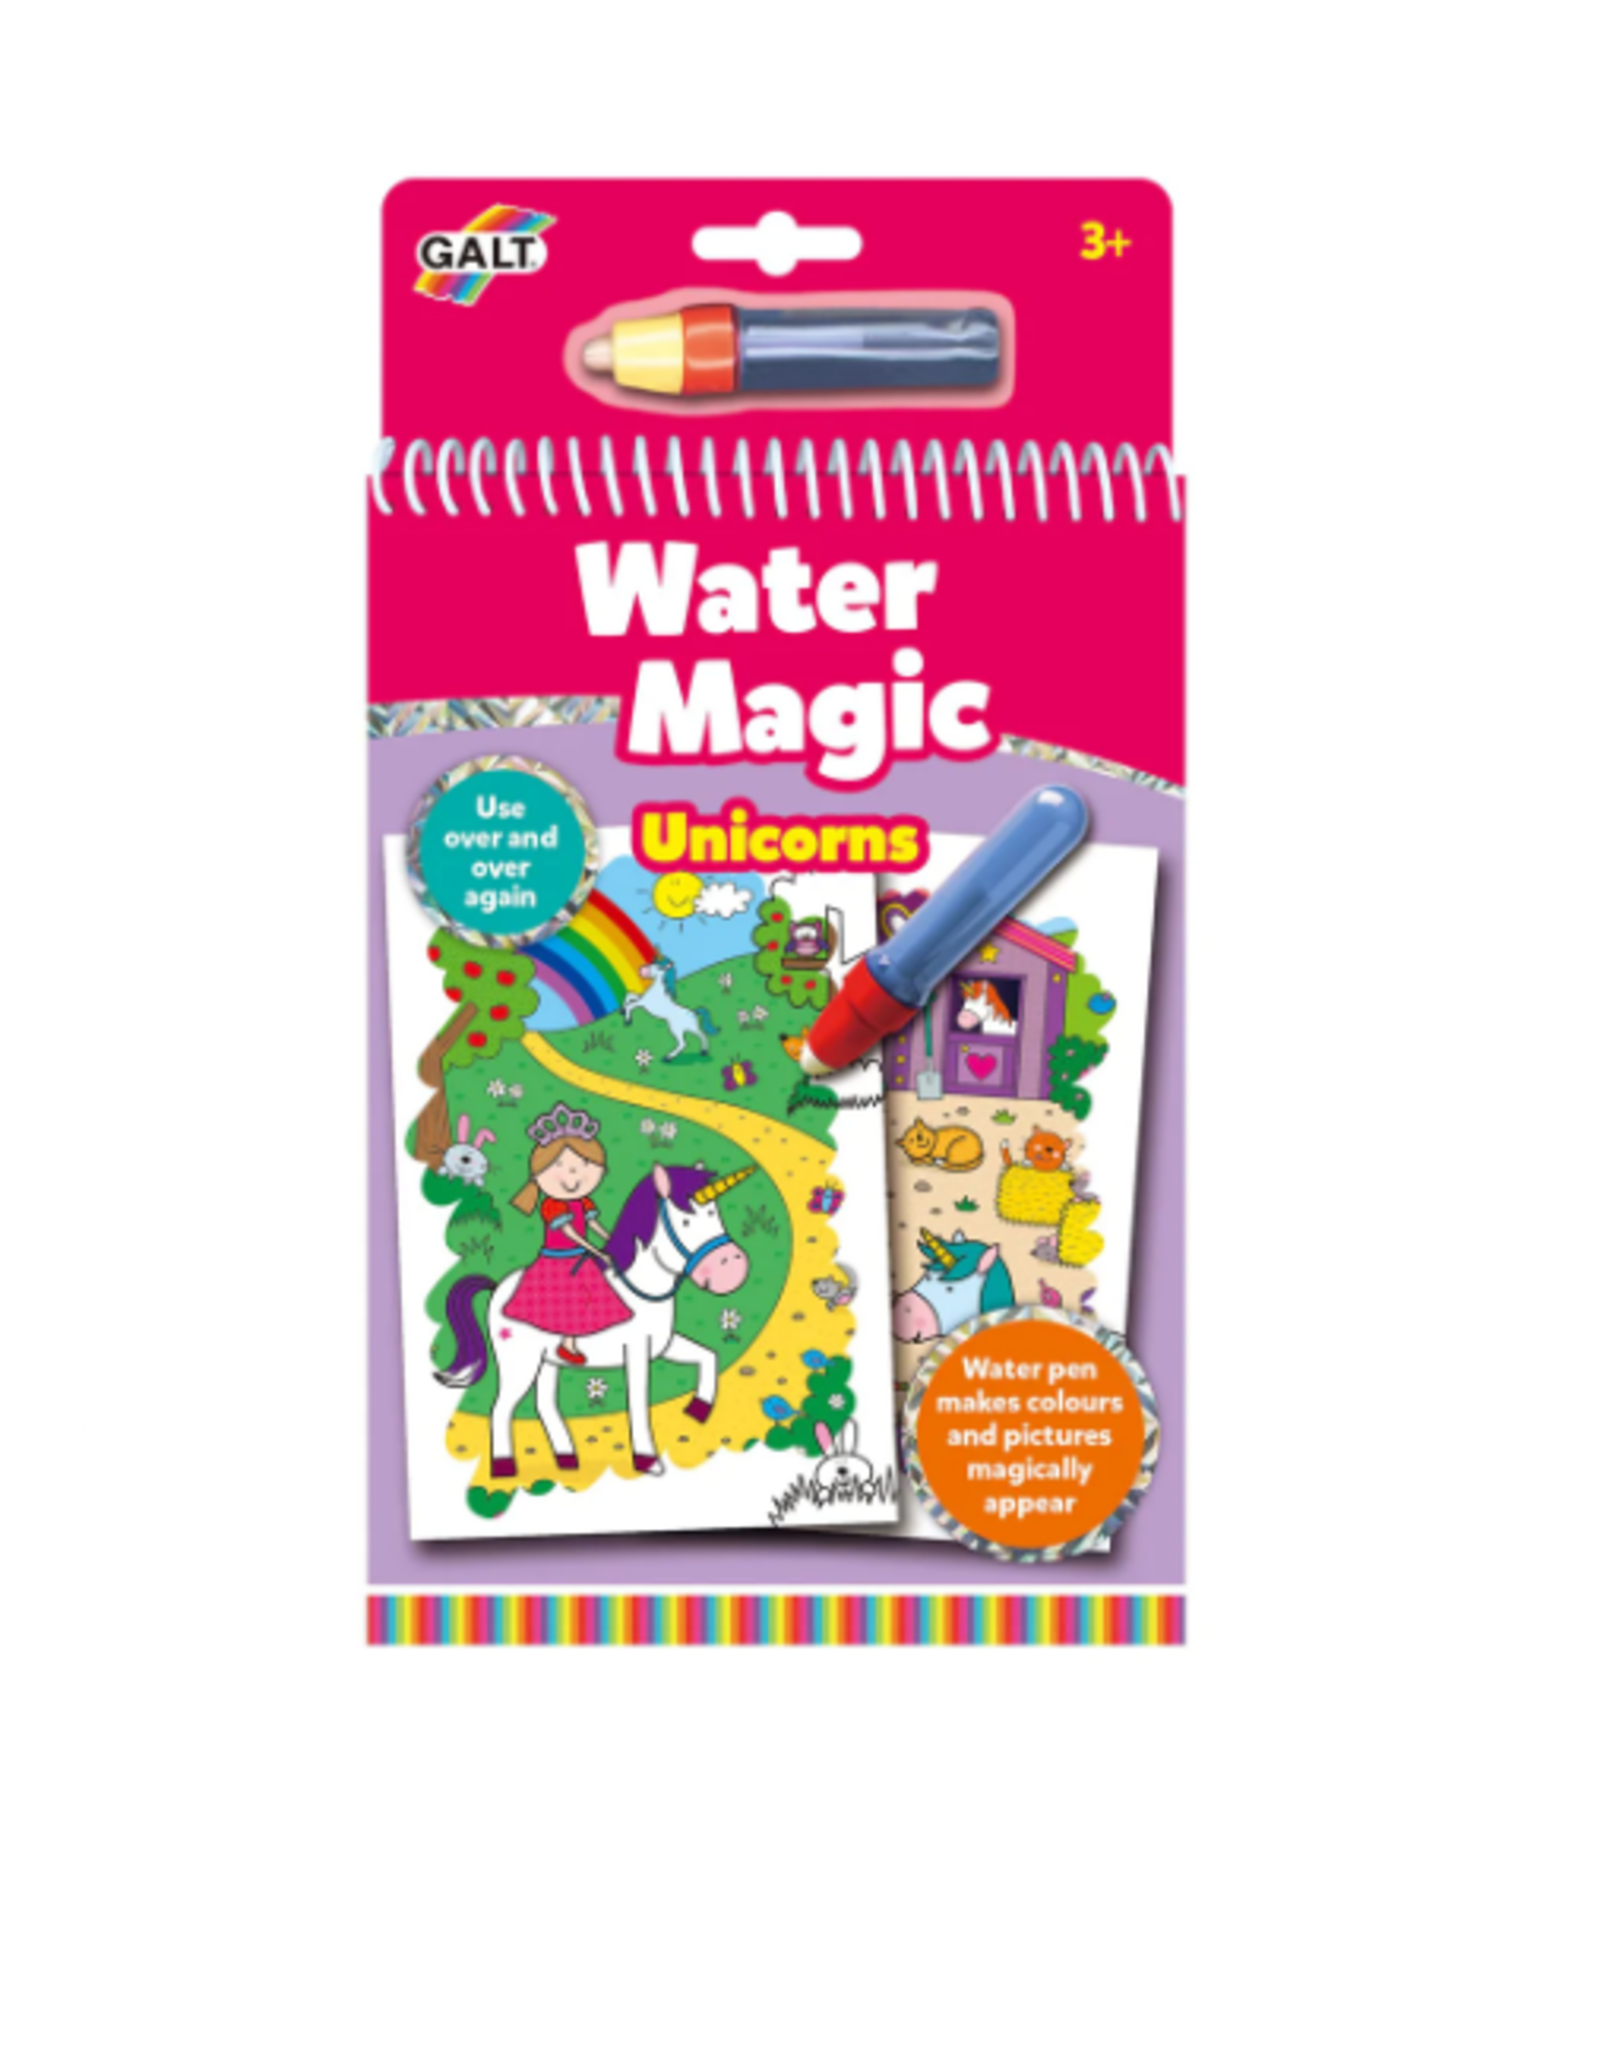 Galt Water Magic book